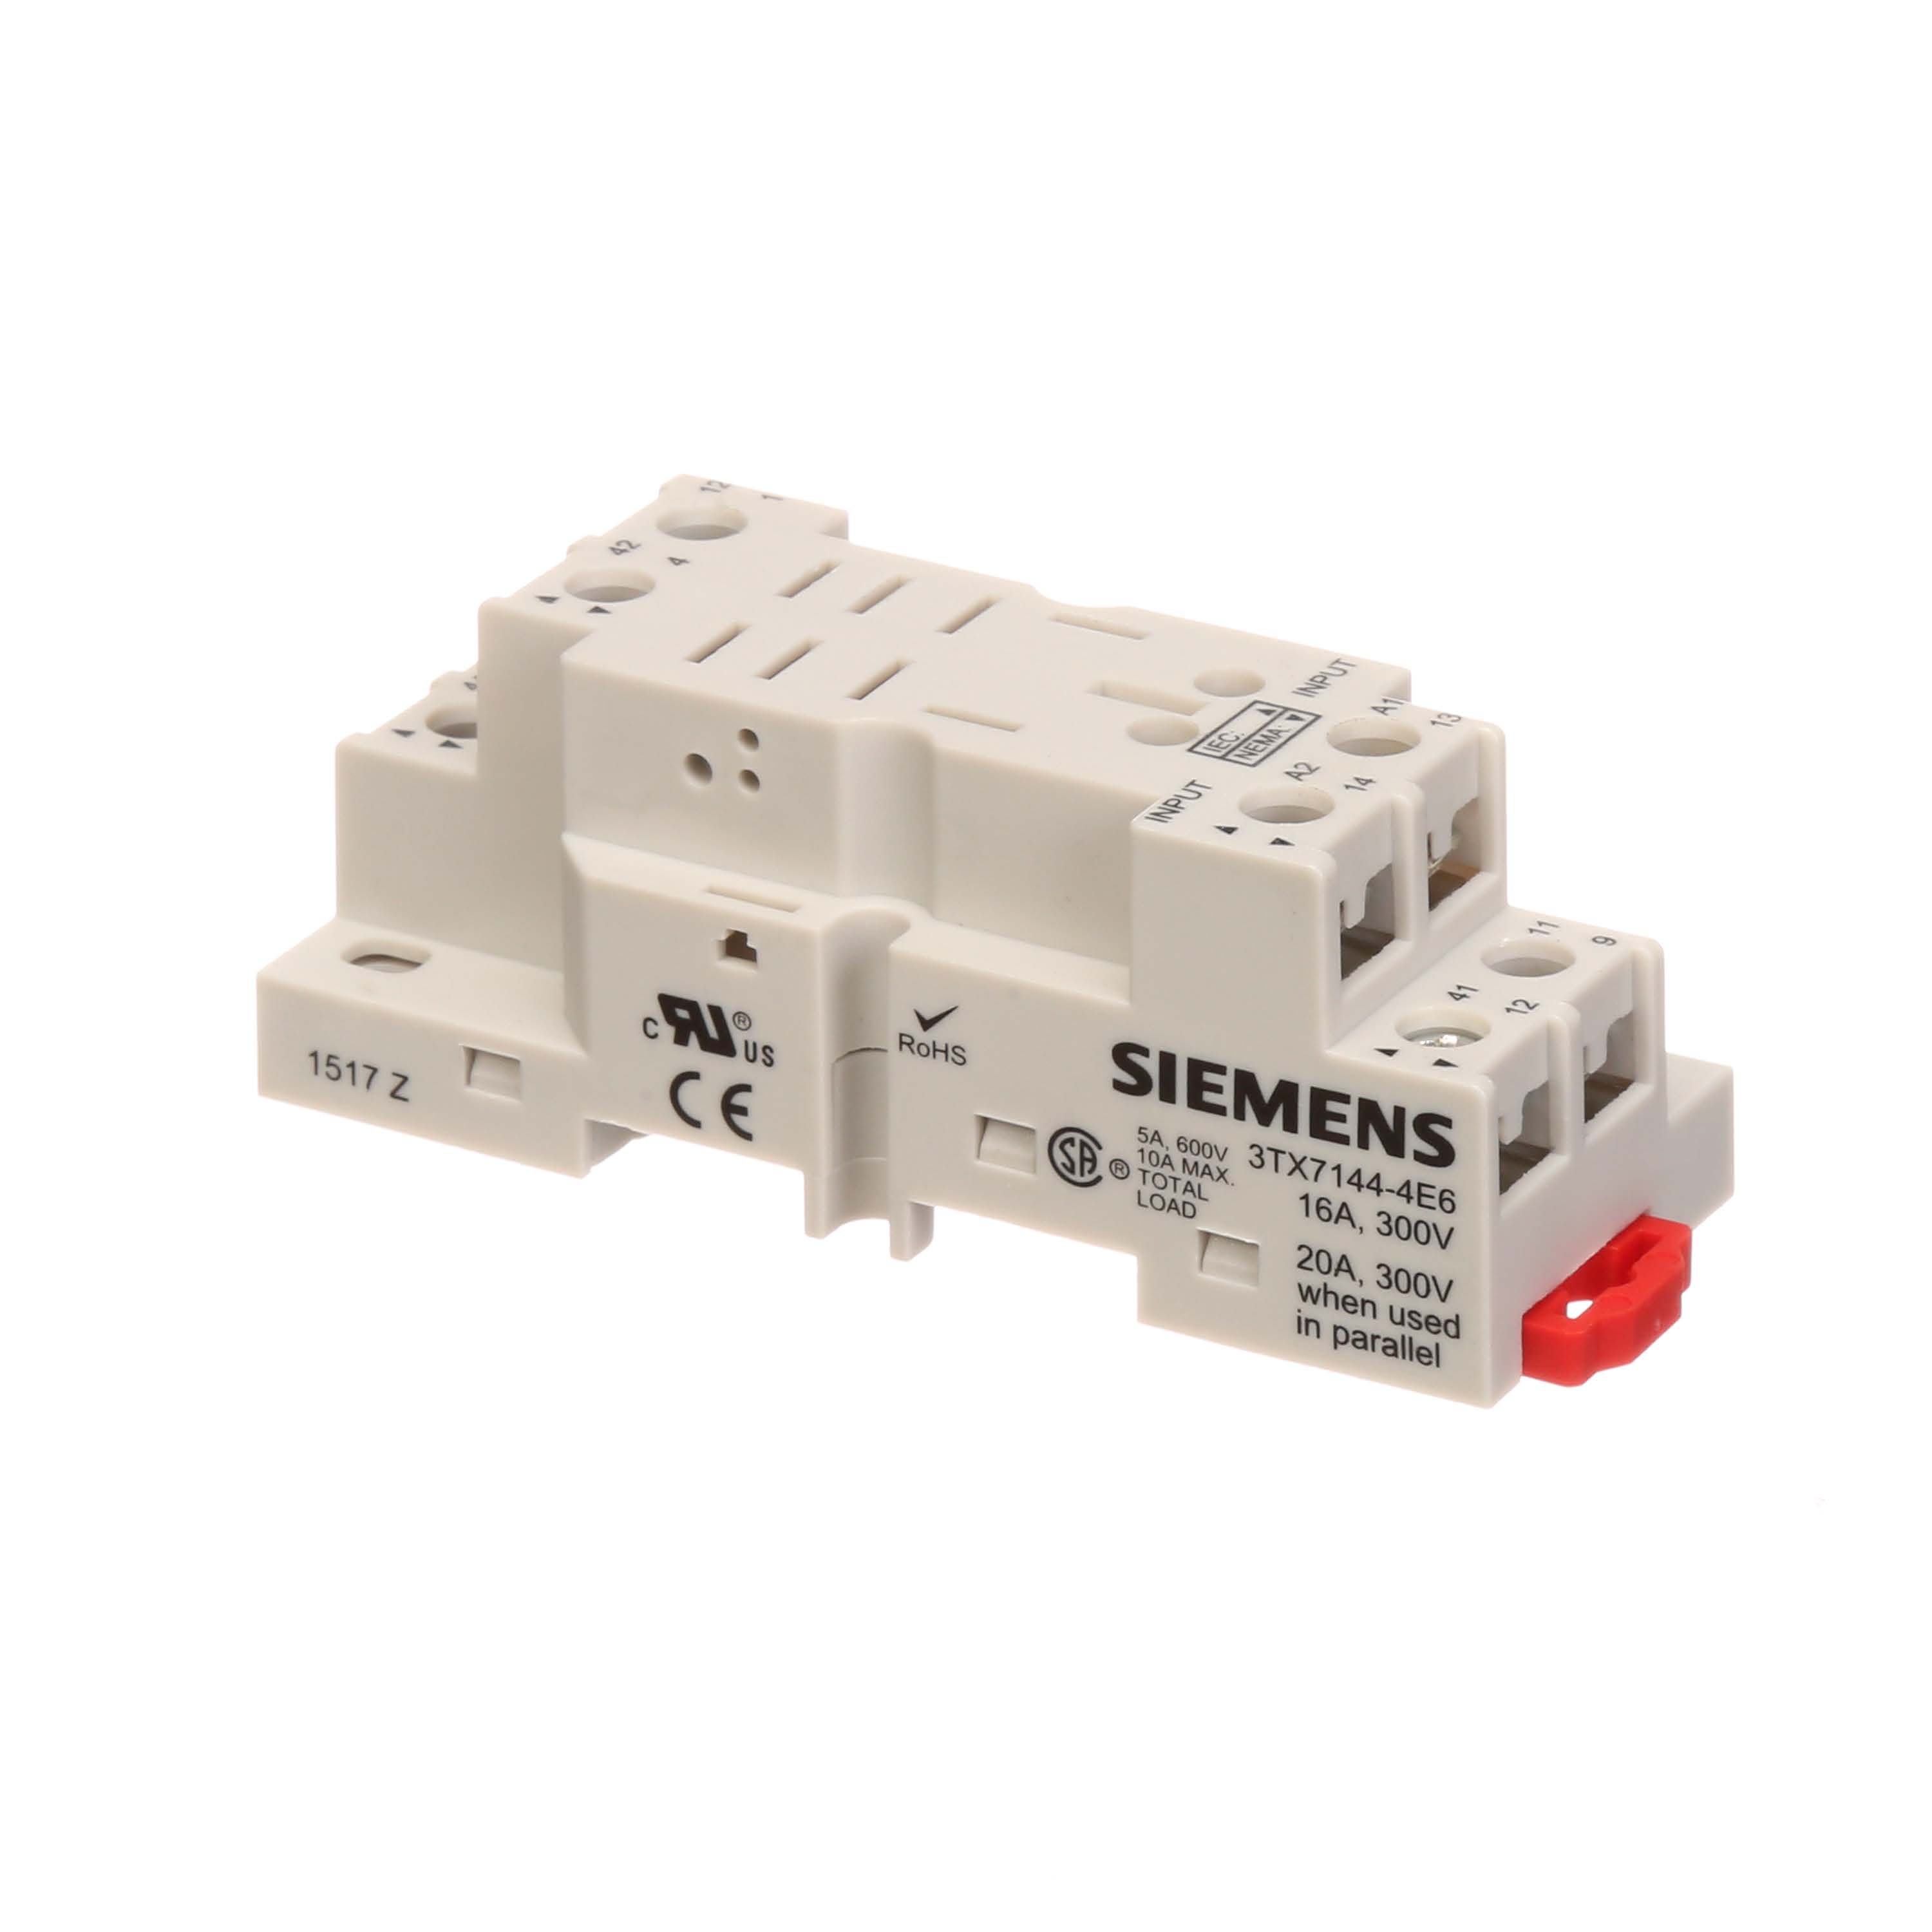 Siemens 3TX7144-4E6 SIRIUS Relay Socket